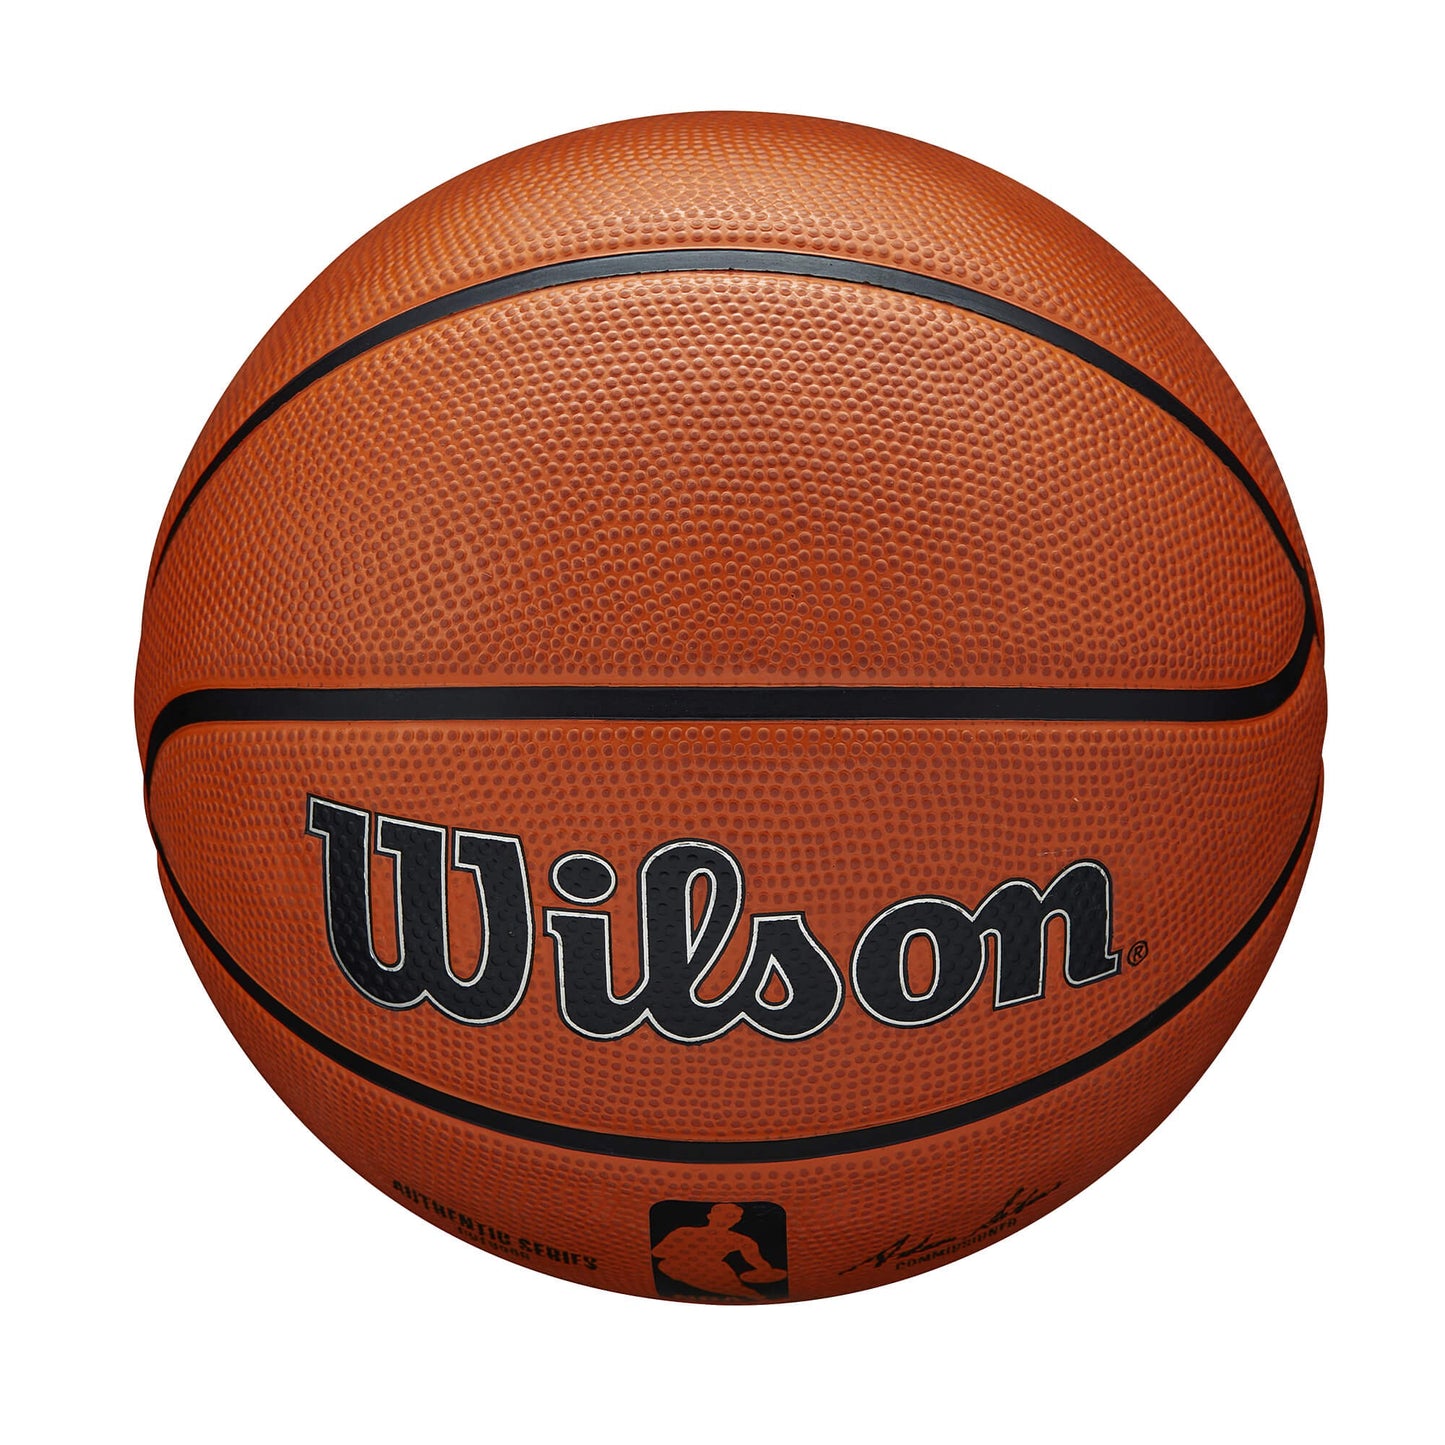 Wilson NBA Authentic Series Outdoor Bskt (Sz. 6)